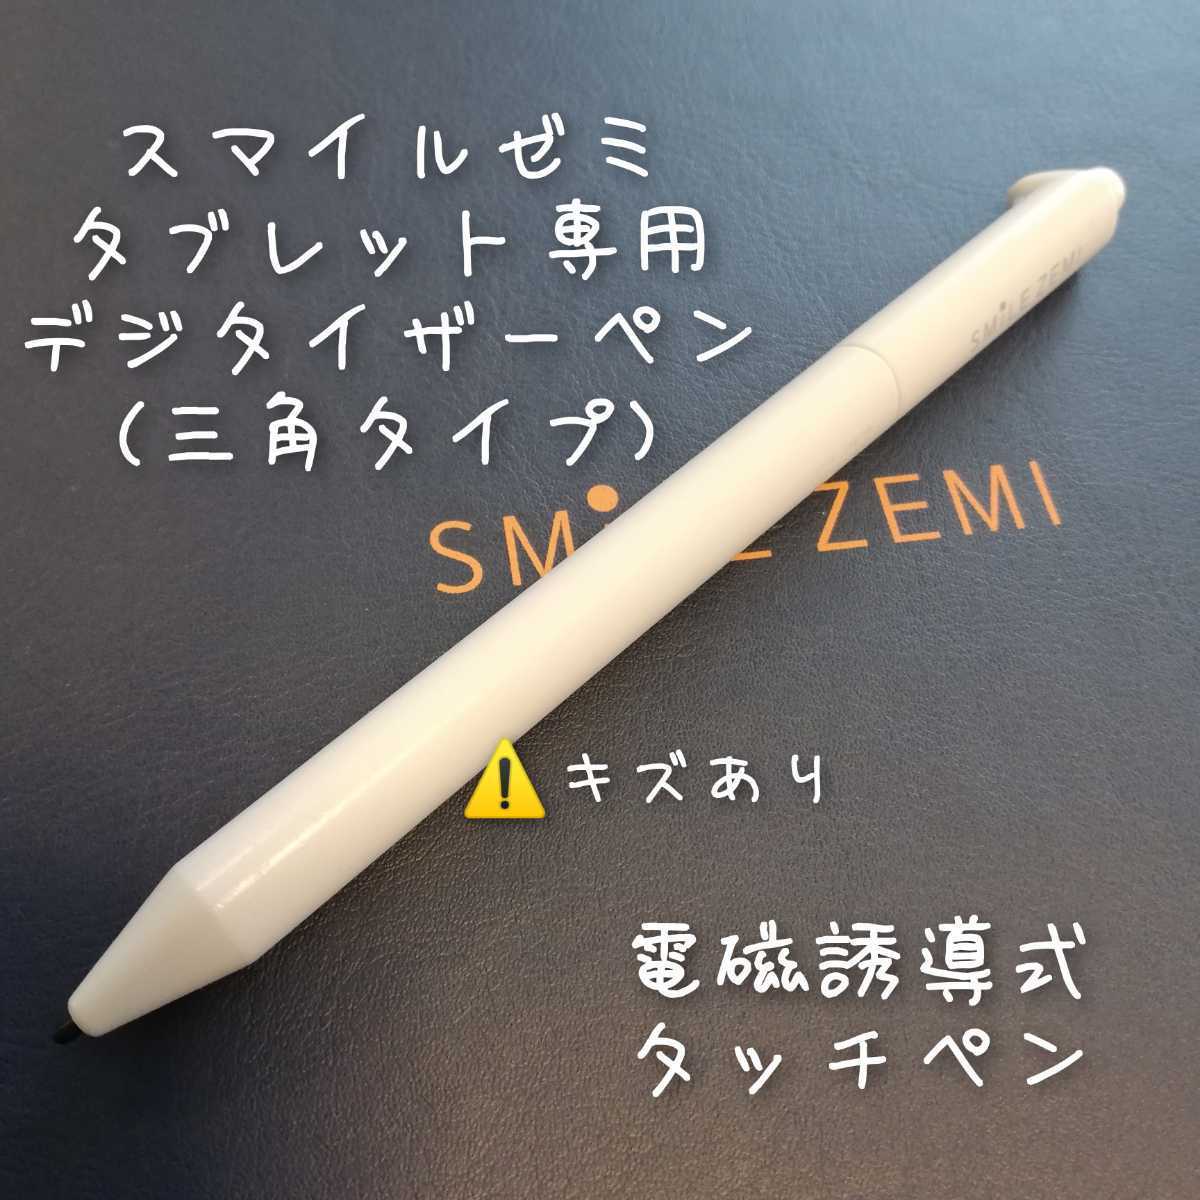 タッチペン ホワイト 白 スマイルゼミ 純正方式 電子 タブレットペン 知育